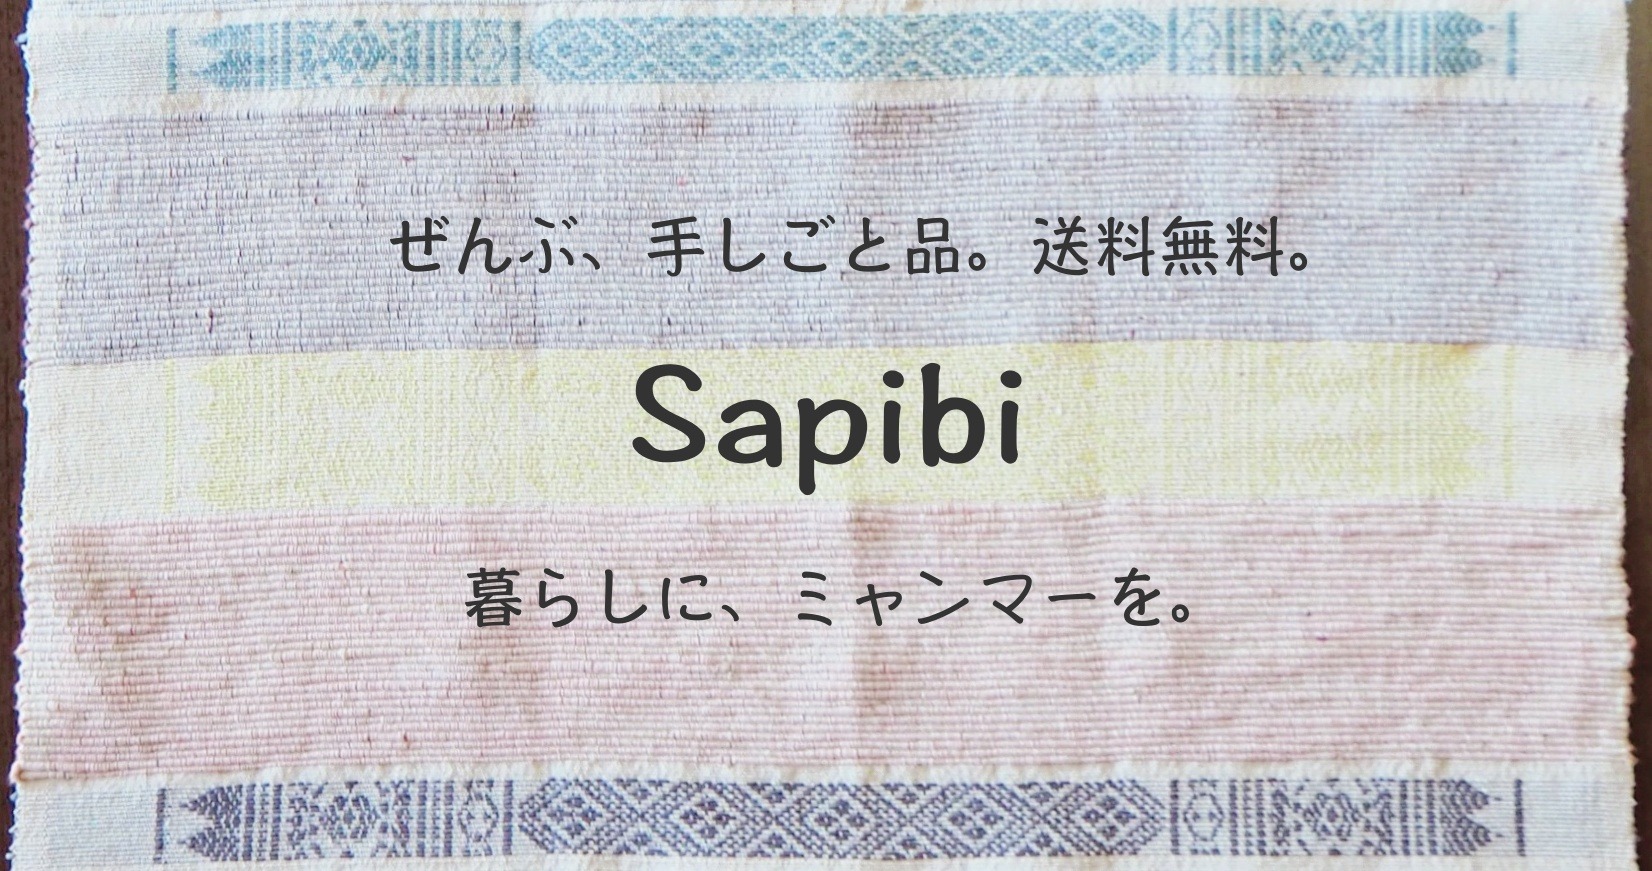 (Sapibi) ミャンマーの手仕事セレクトショップ サーピービー ハンドメイド、布雑貨の通販、エシカルでフェアトレード